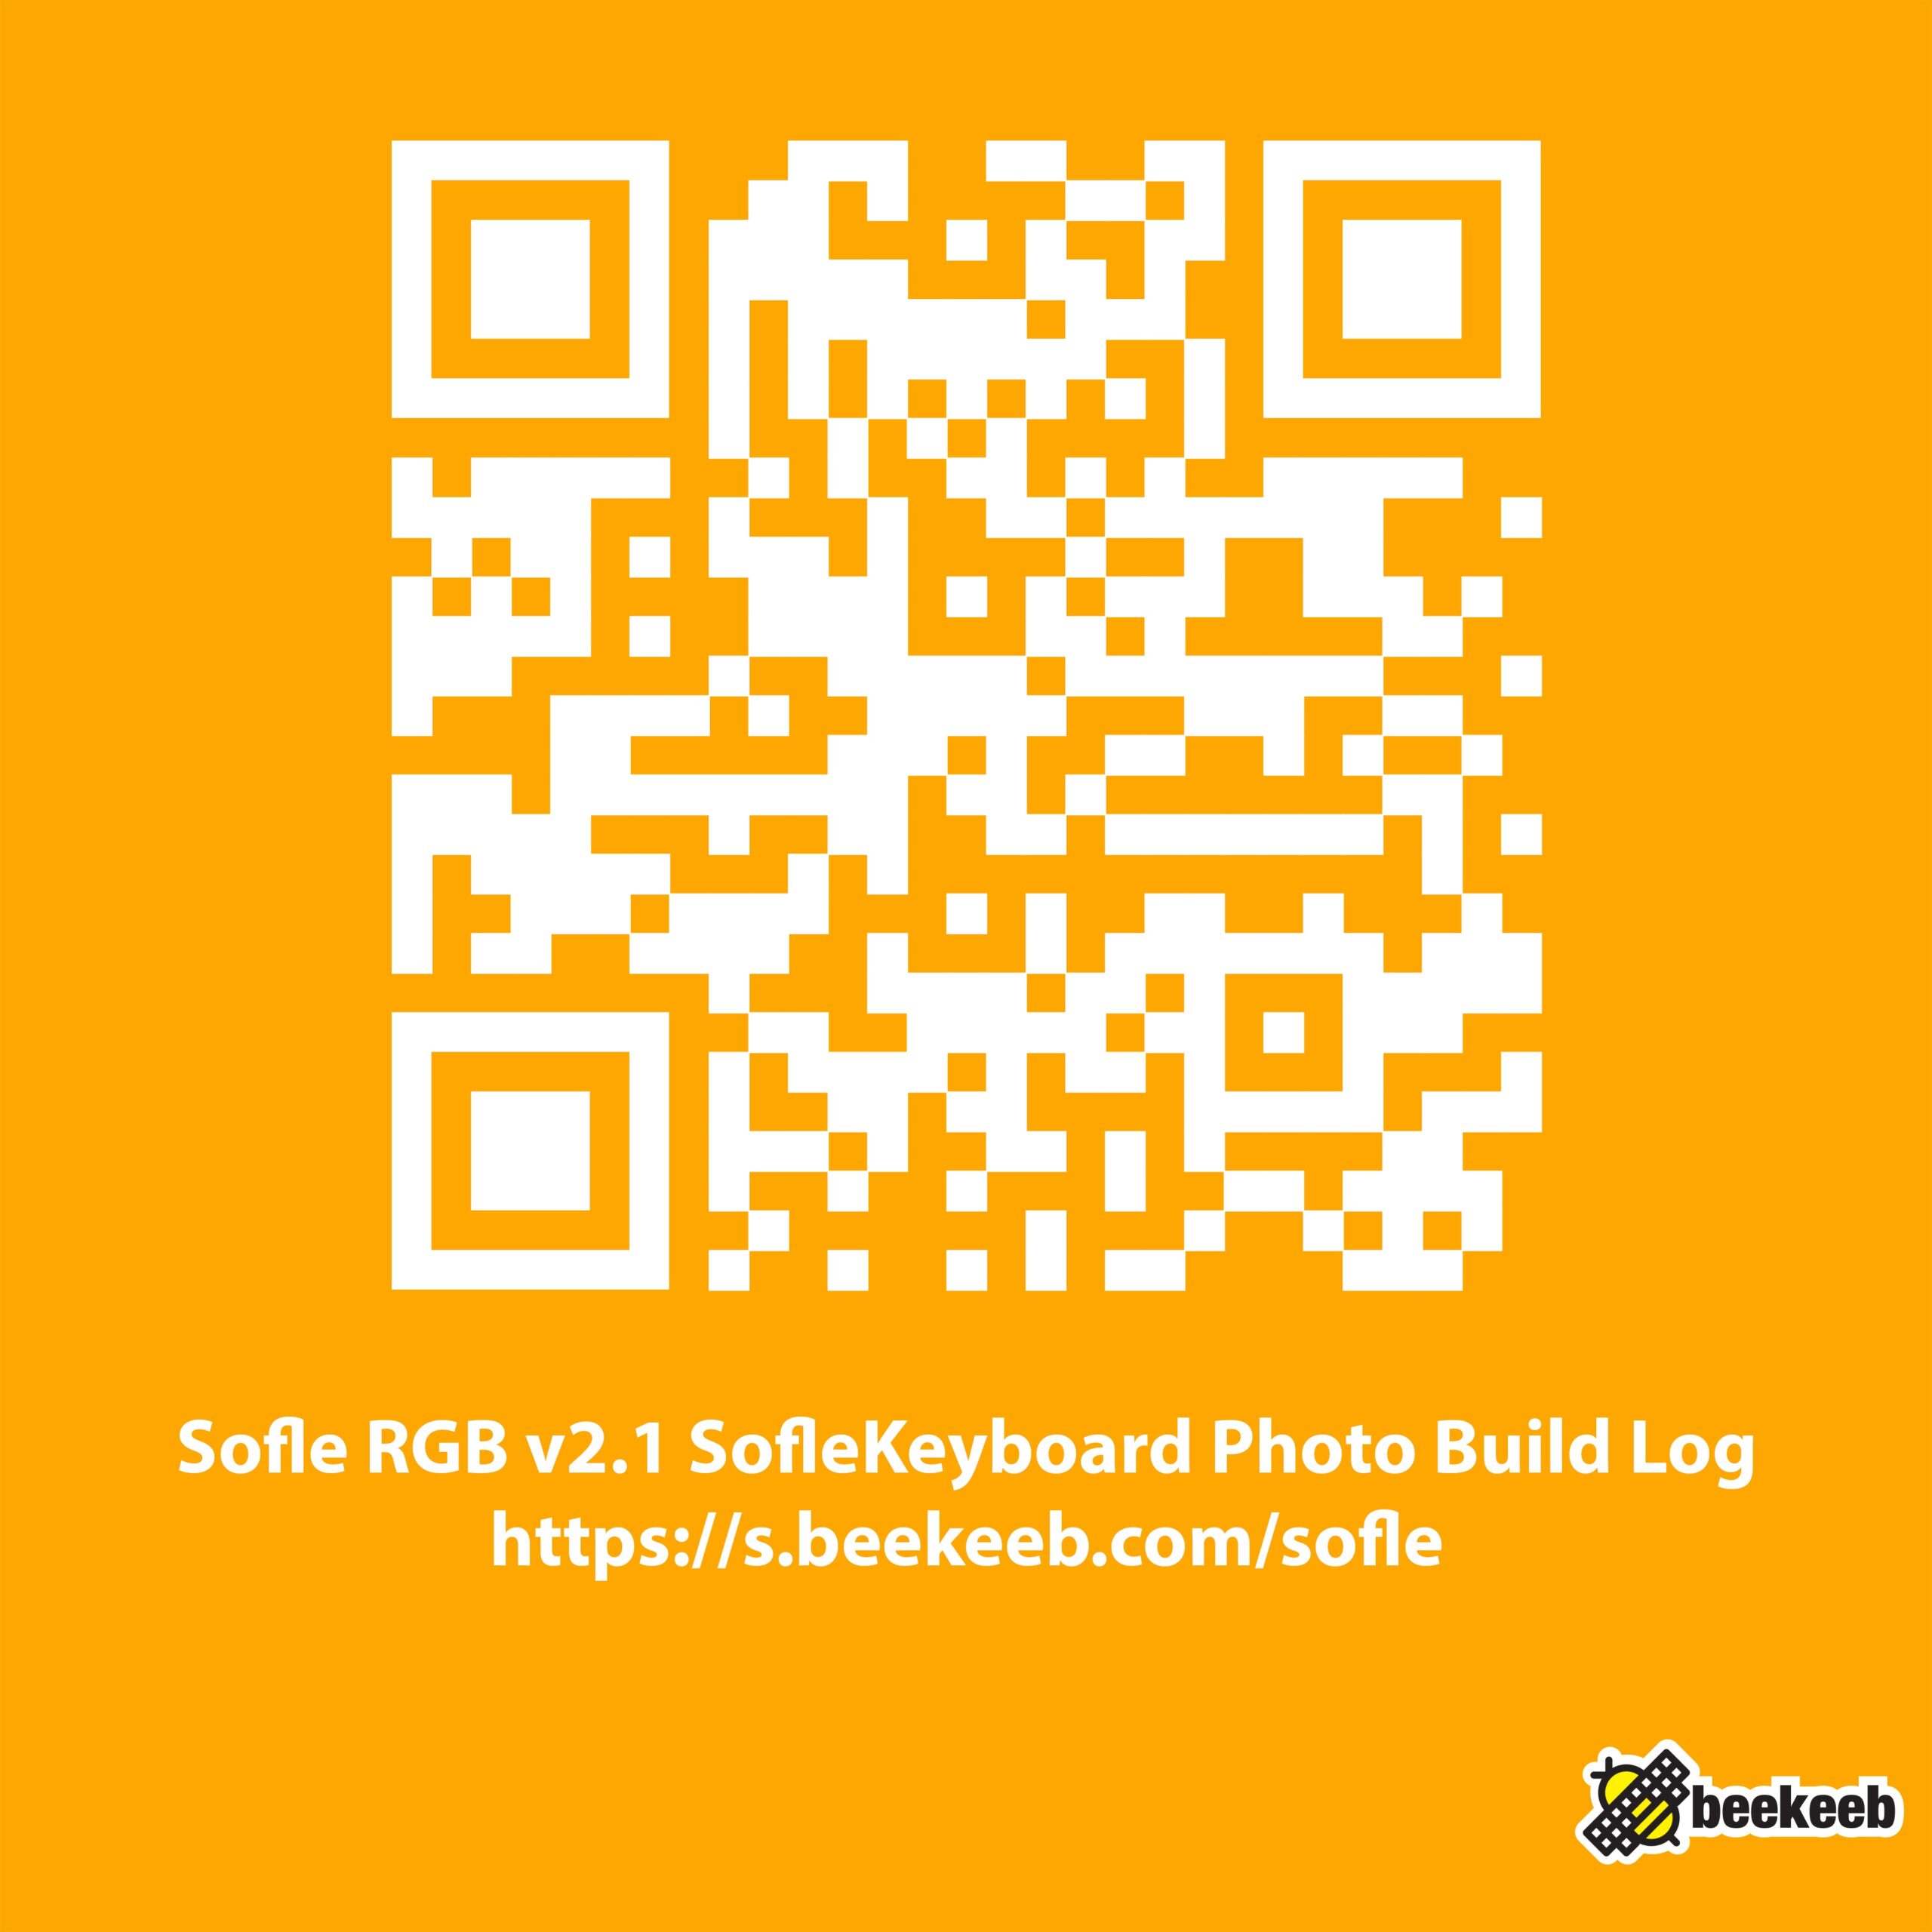 Sofle RGB v2.1 SofleKeyboard Photo Build Log